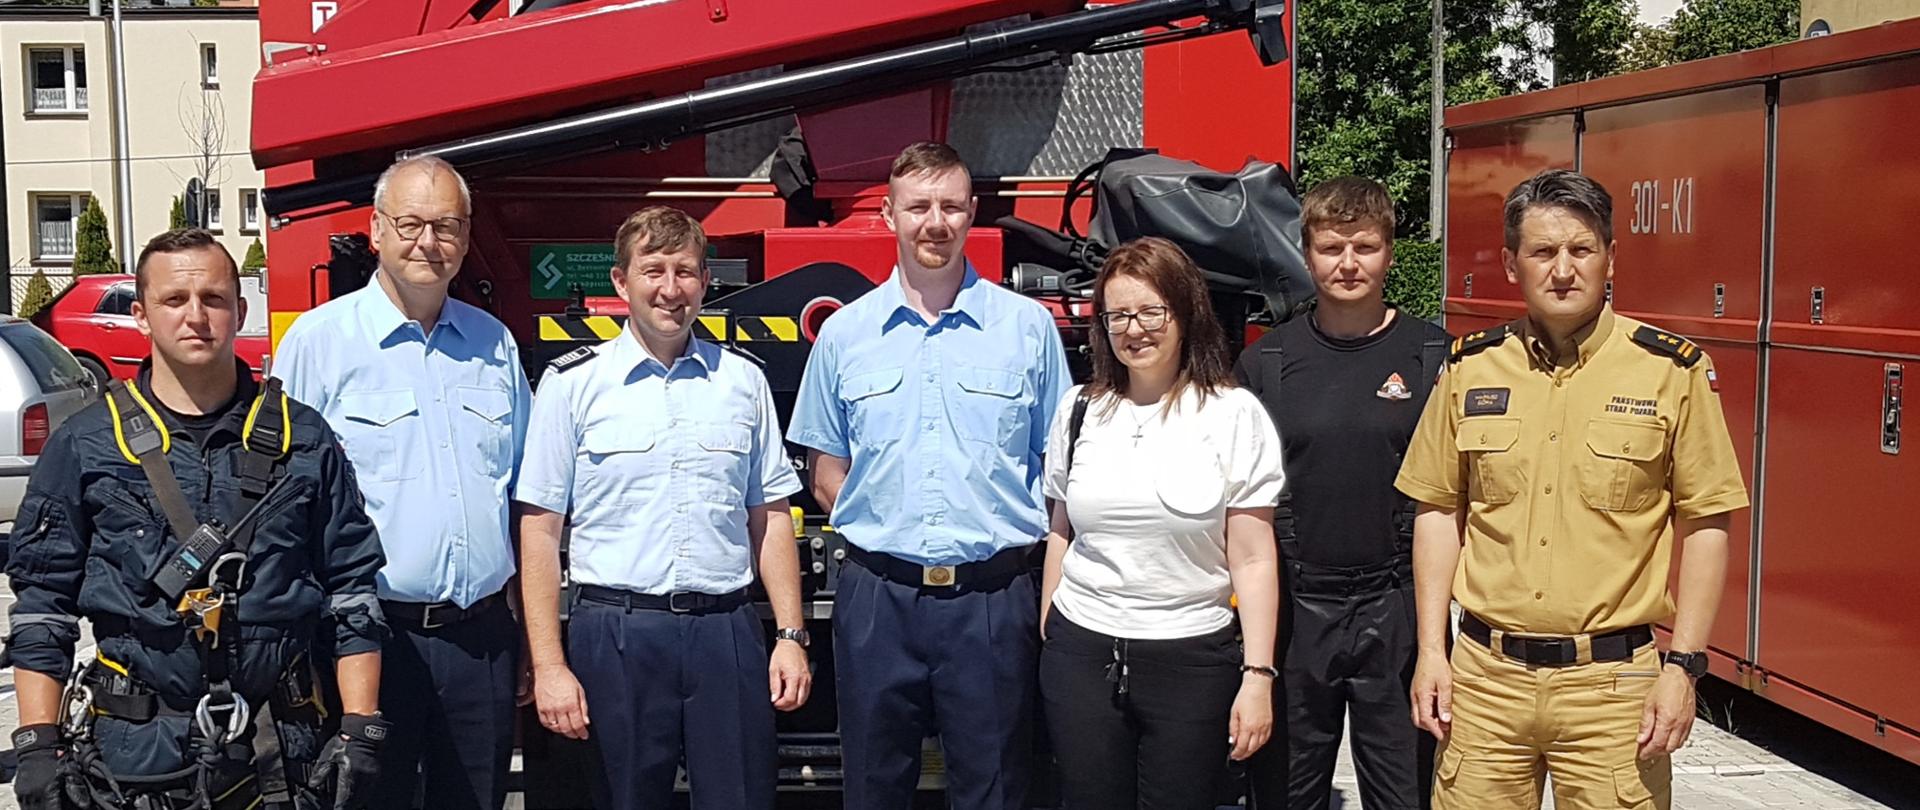 Wizyta strażaków z miasta partnerskiego Gotha u kieleckich strażaków - zdjęcie przedstawia gości z Niemiec i strażaków z Kielc na tle samochodu ratownictwa technicznego w JRG 3 Kielce.